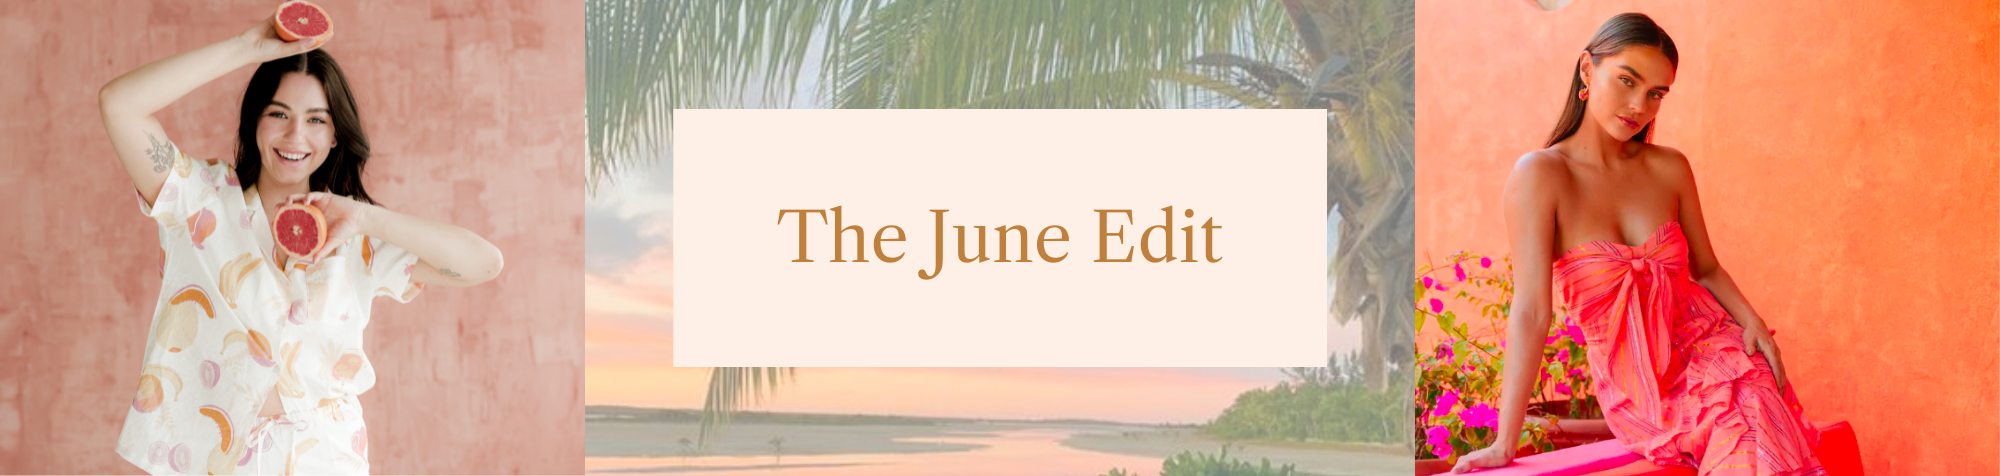 The June Edit